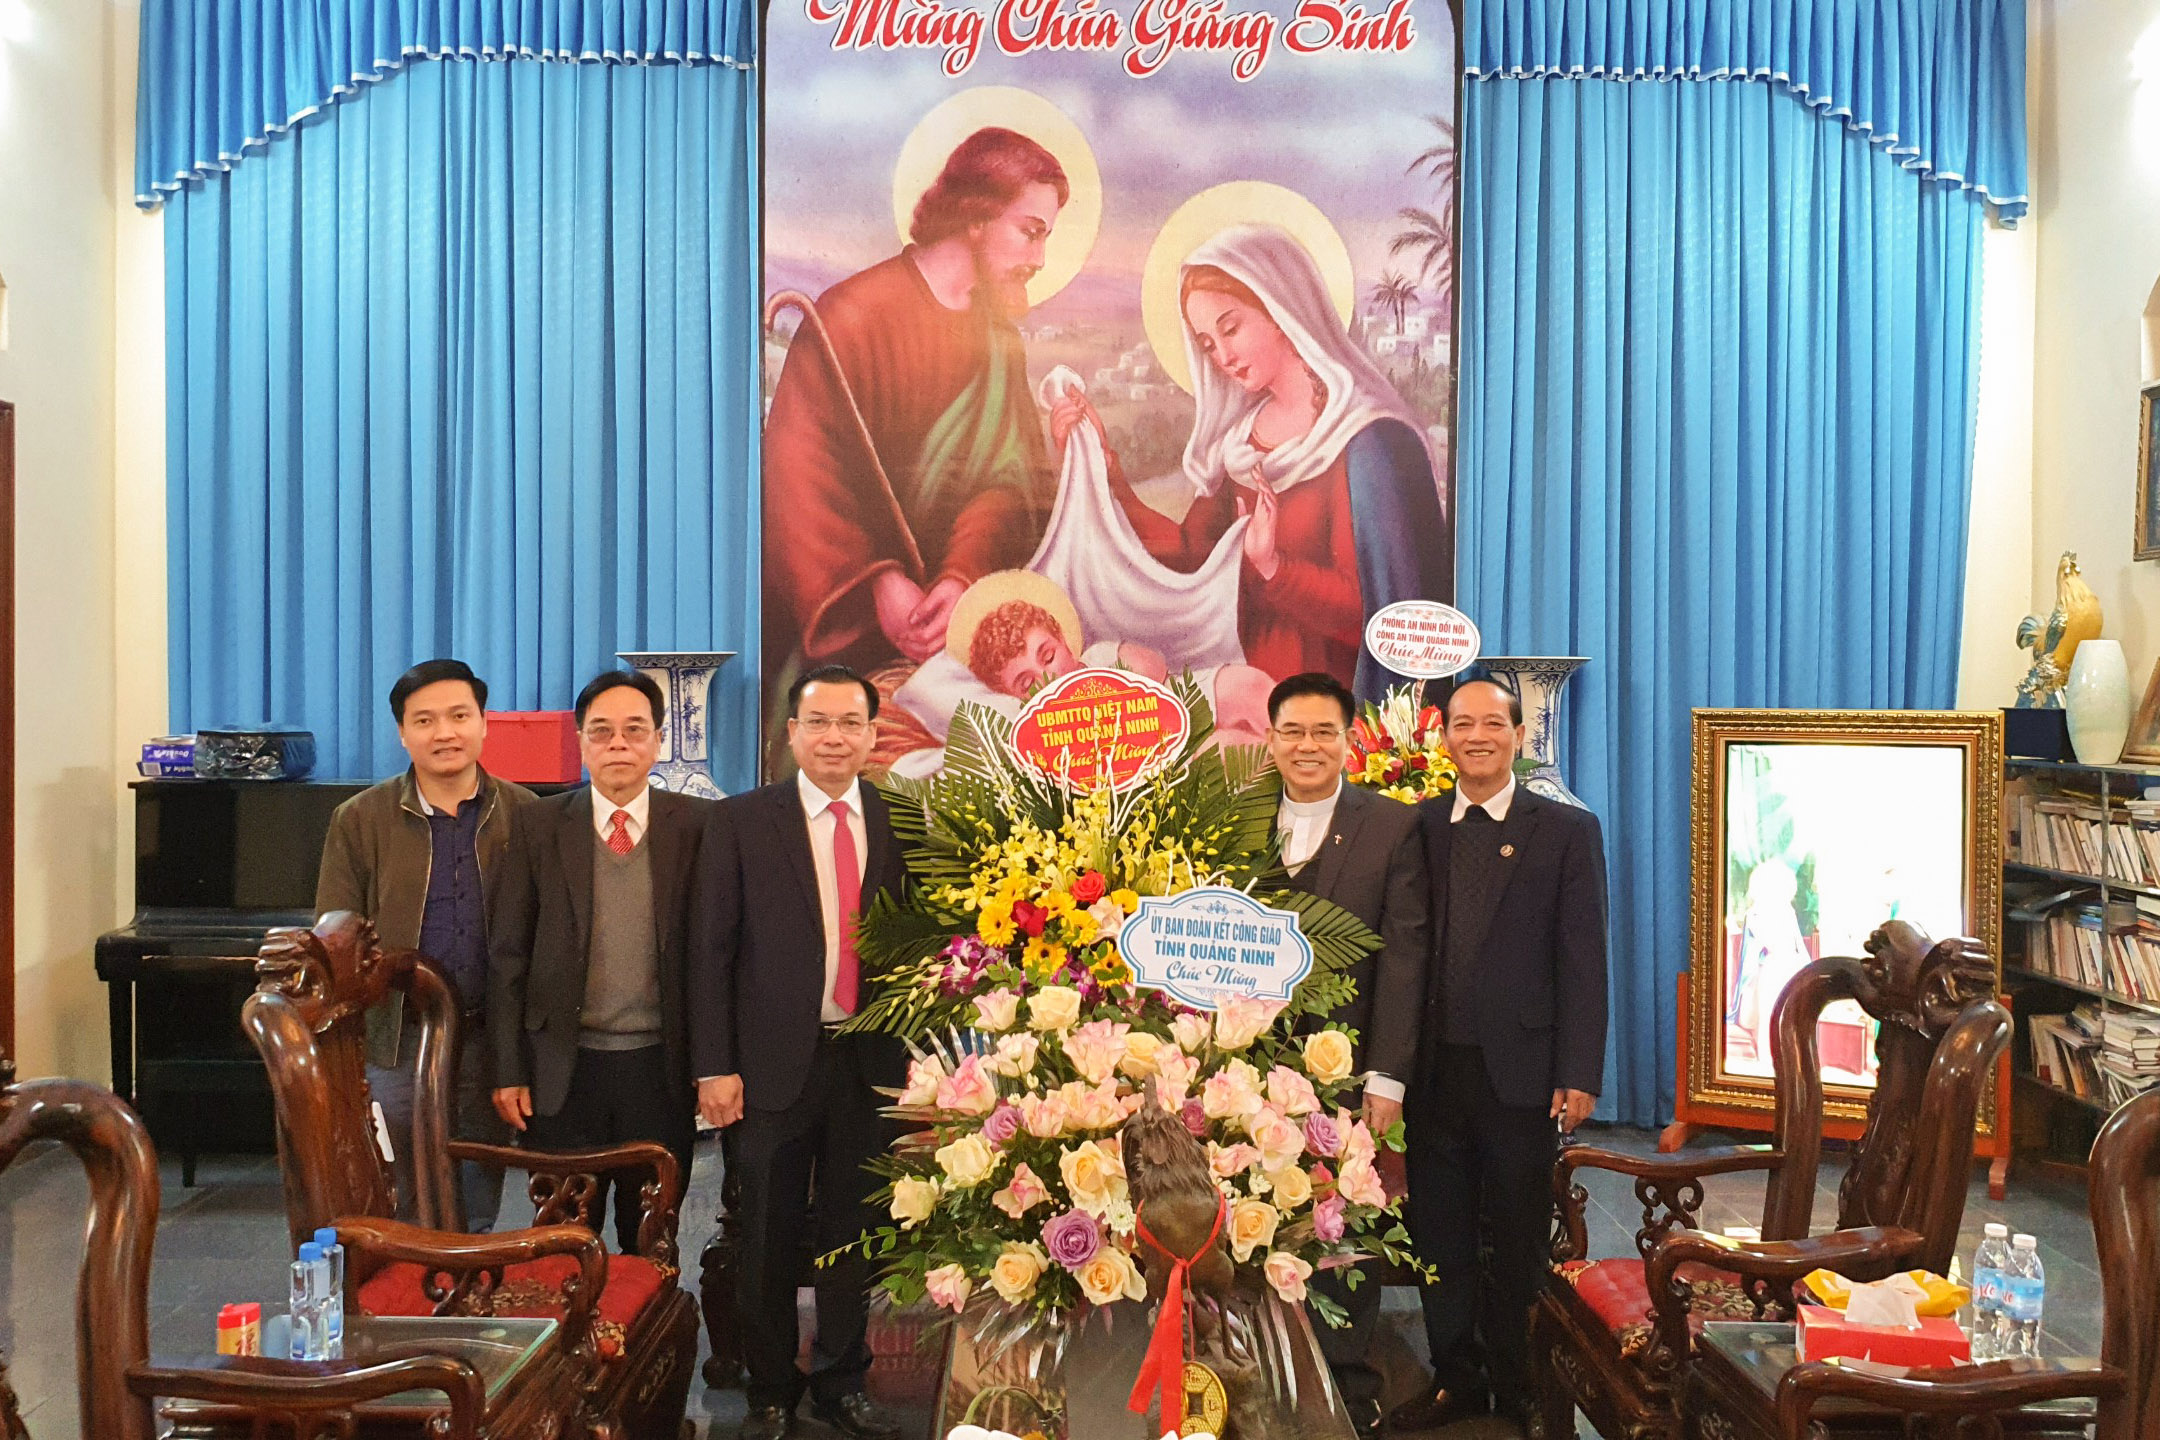 Đồng chí Hoàng Đức Hạnh, Phó Chủ tịch Ủy ban MTTQ tỉnh, thăm giáo xứ Mạo Khê nhân dịp lễ Giáng sinh năm 2020.